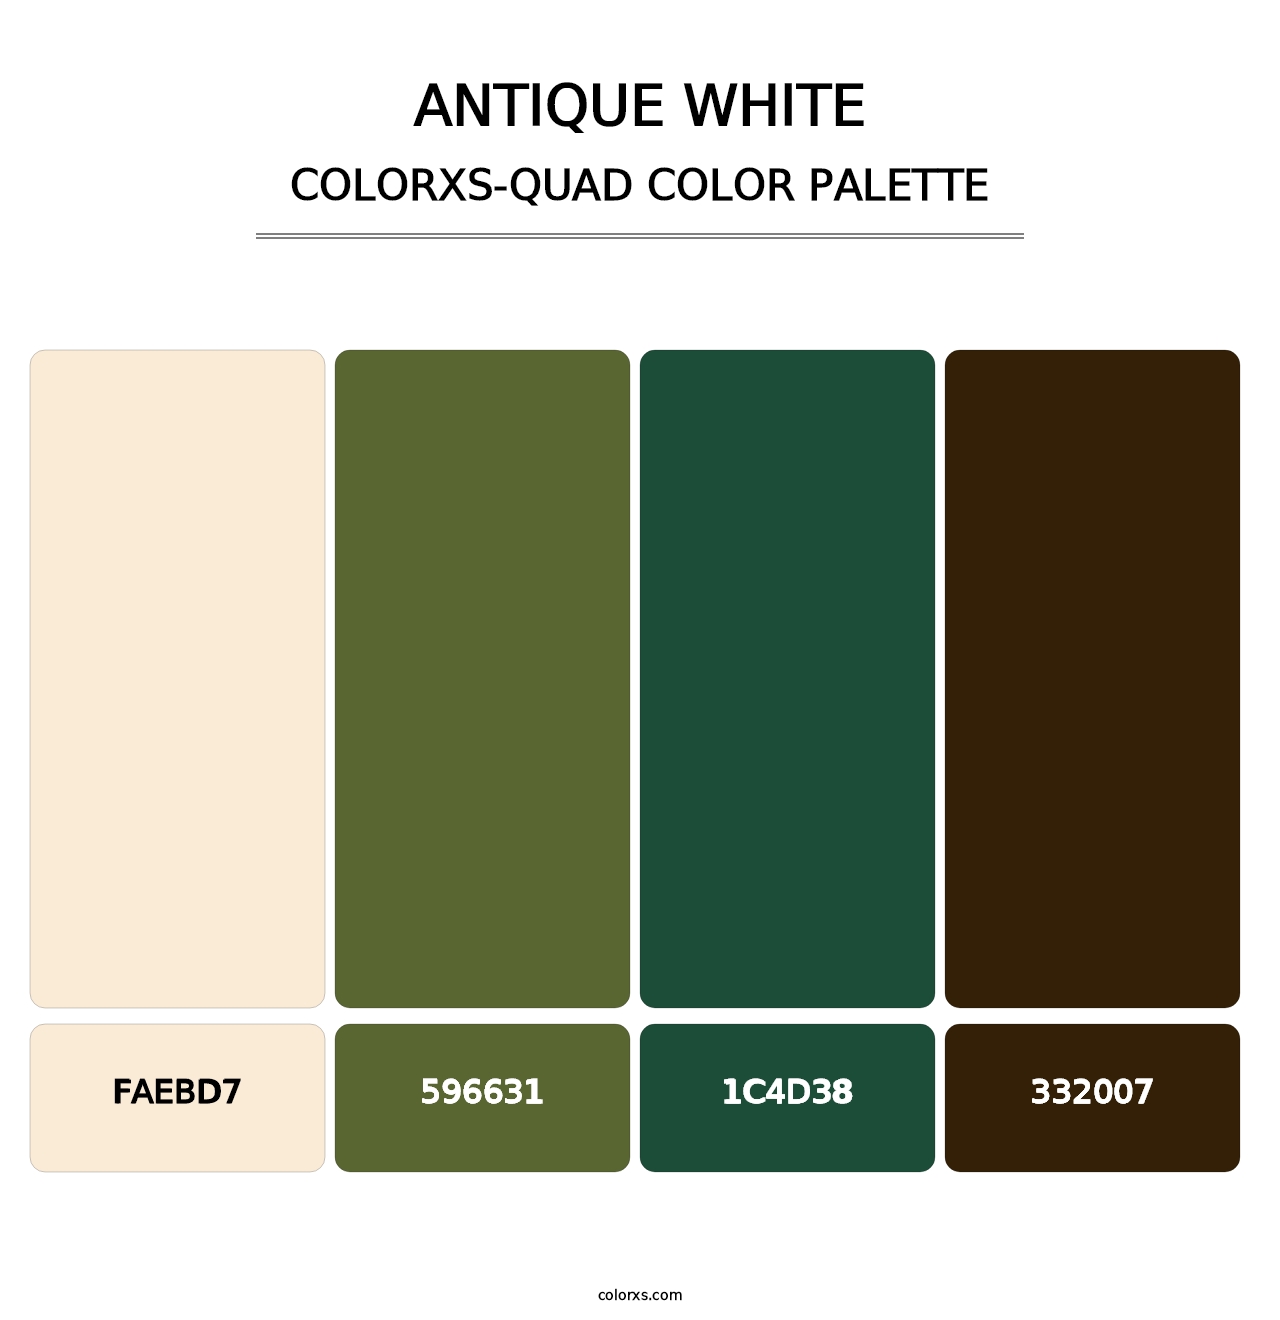 Antique White - Colorxs Quad Palette